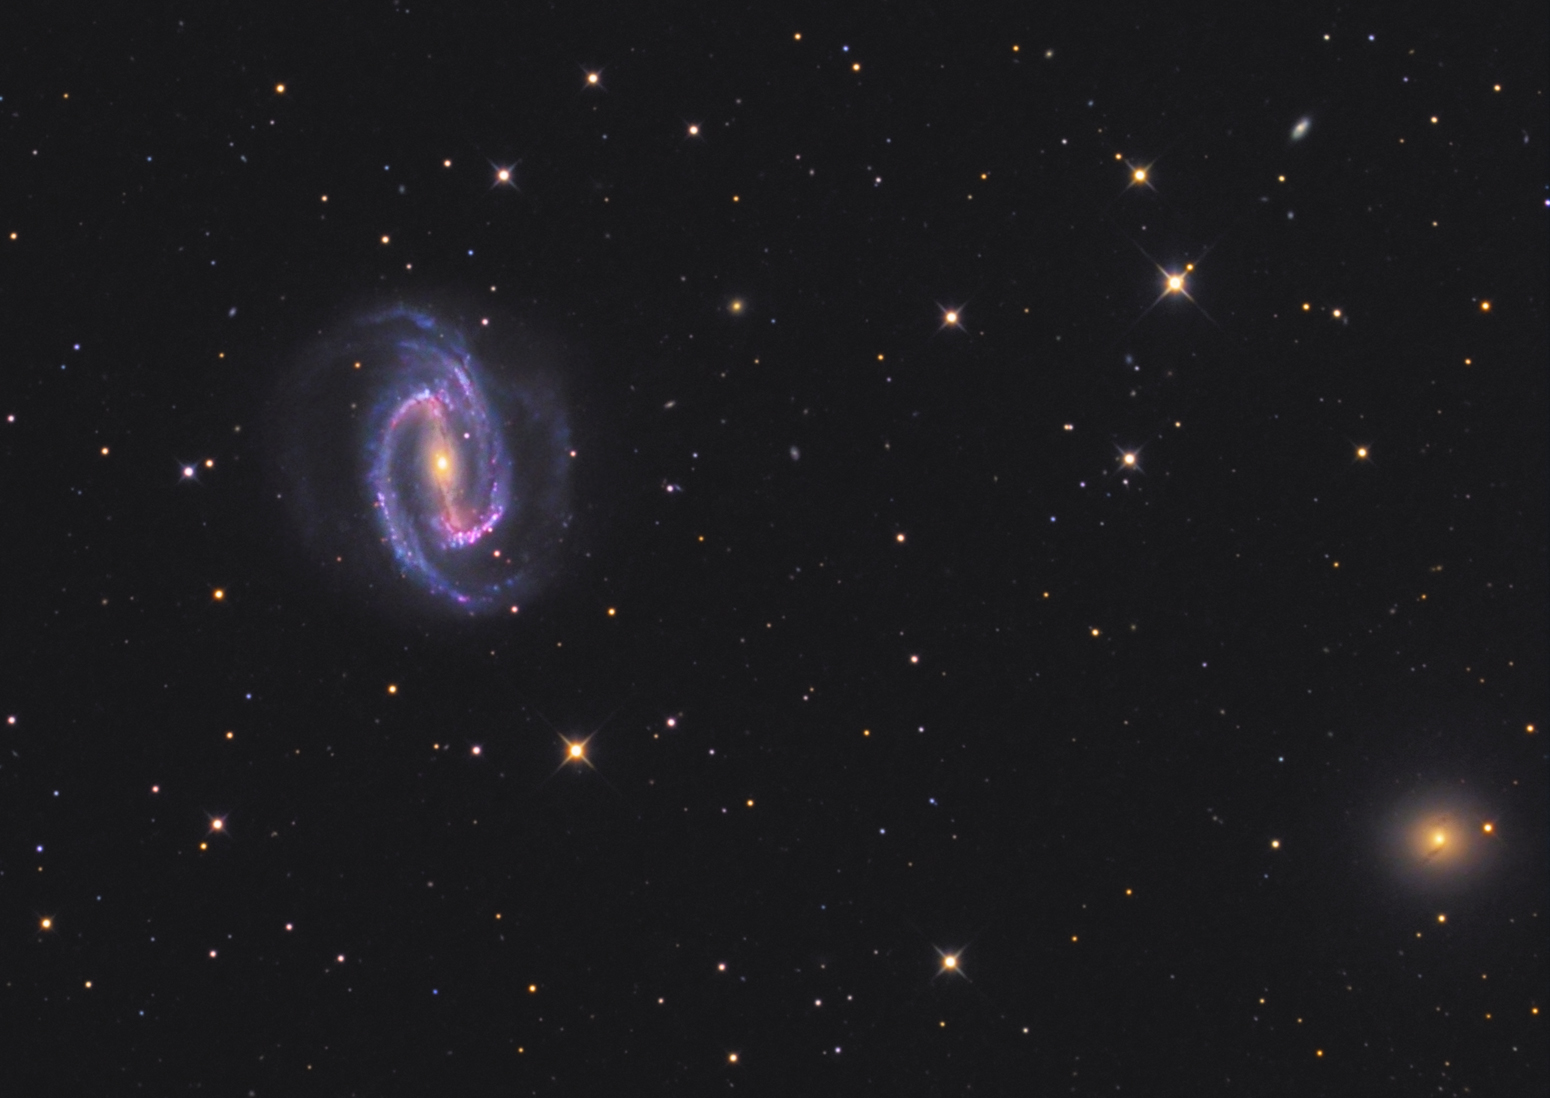 NGC 1300 and NGC 1297